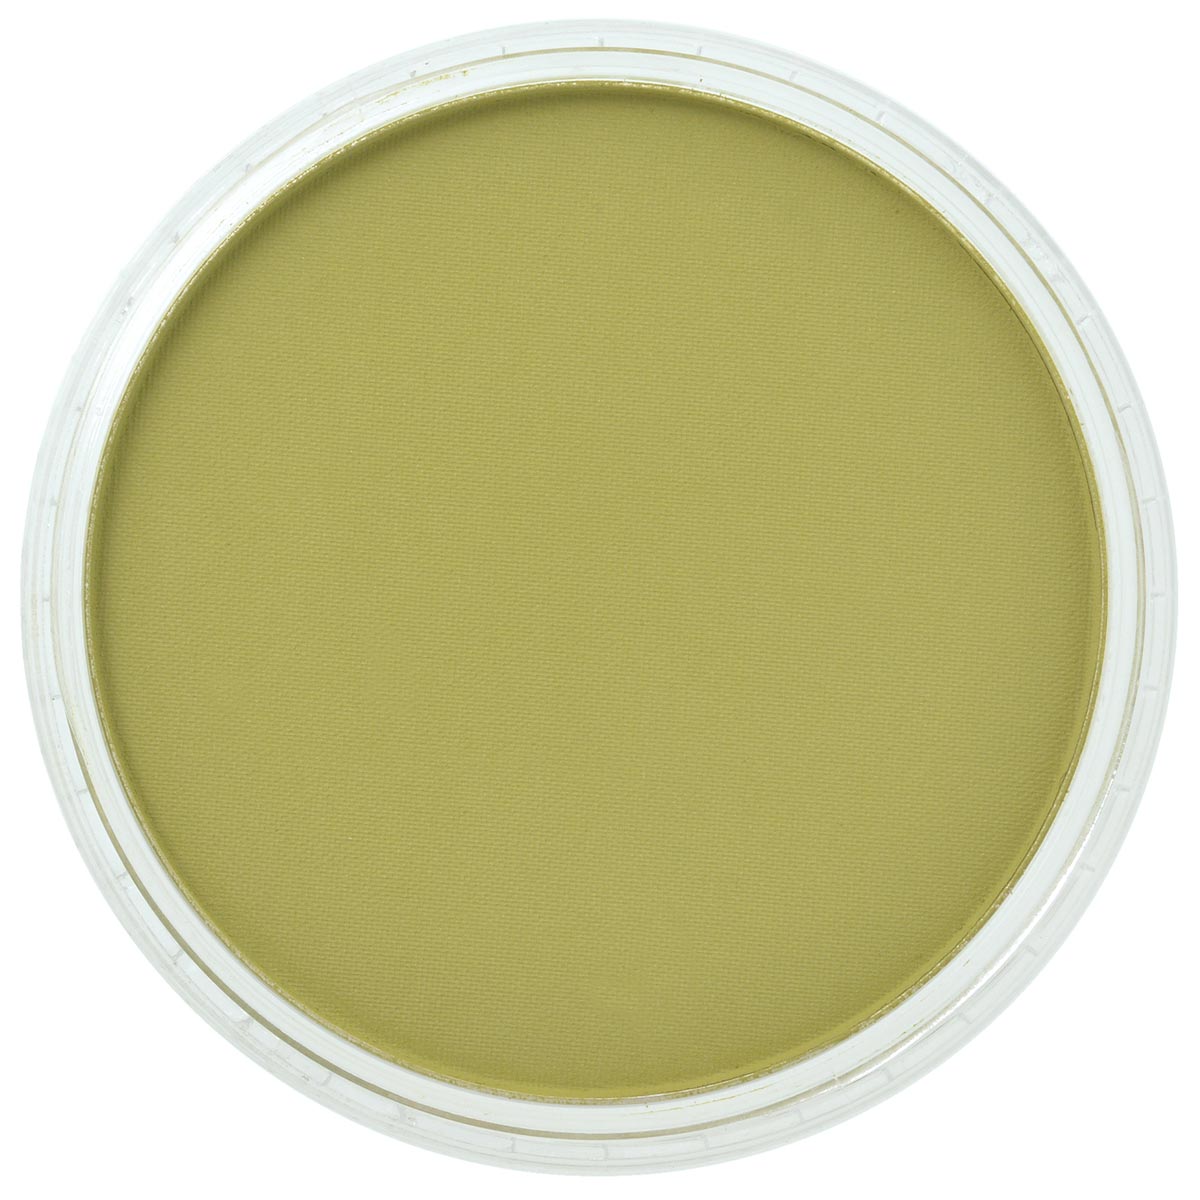 Pan Pastel Bright Yellow Green Shade 680.3